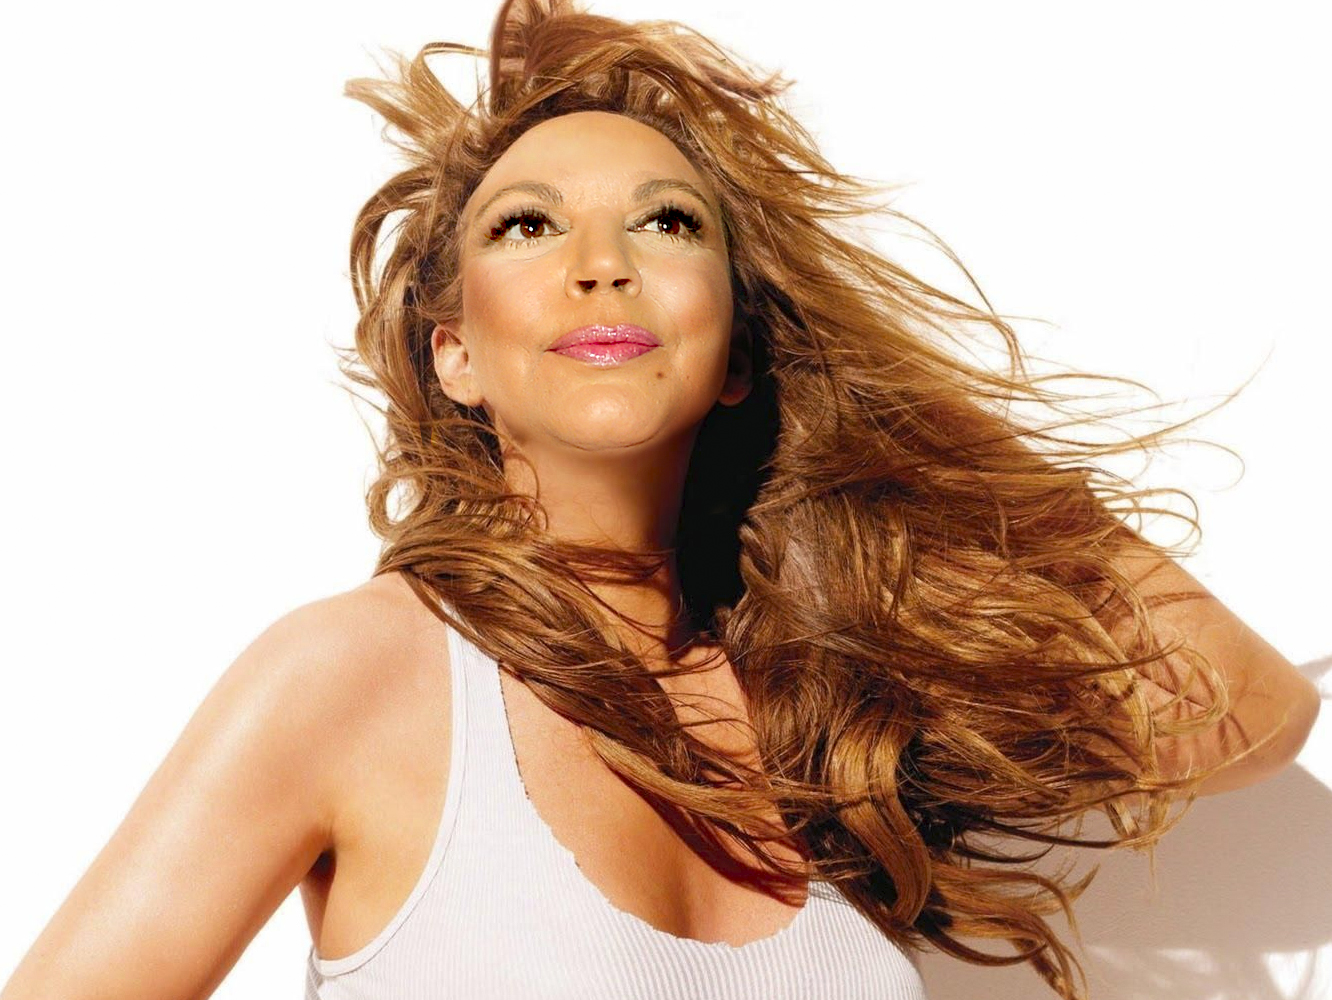 Mariah Carey confirma haber estado trabajando en sus ‘Memoirs’, que ya están a punto